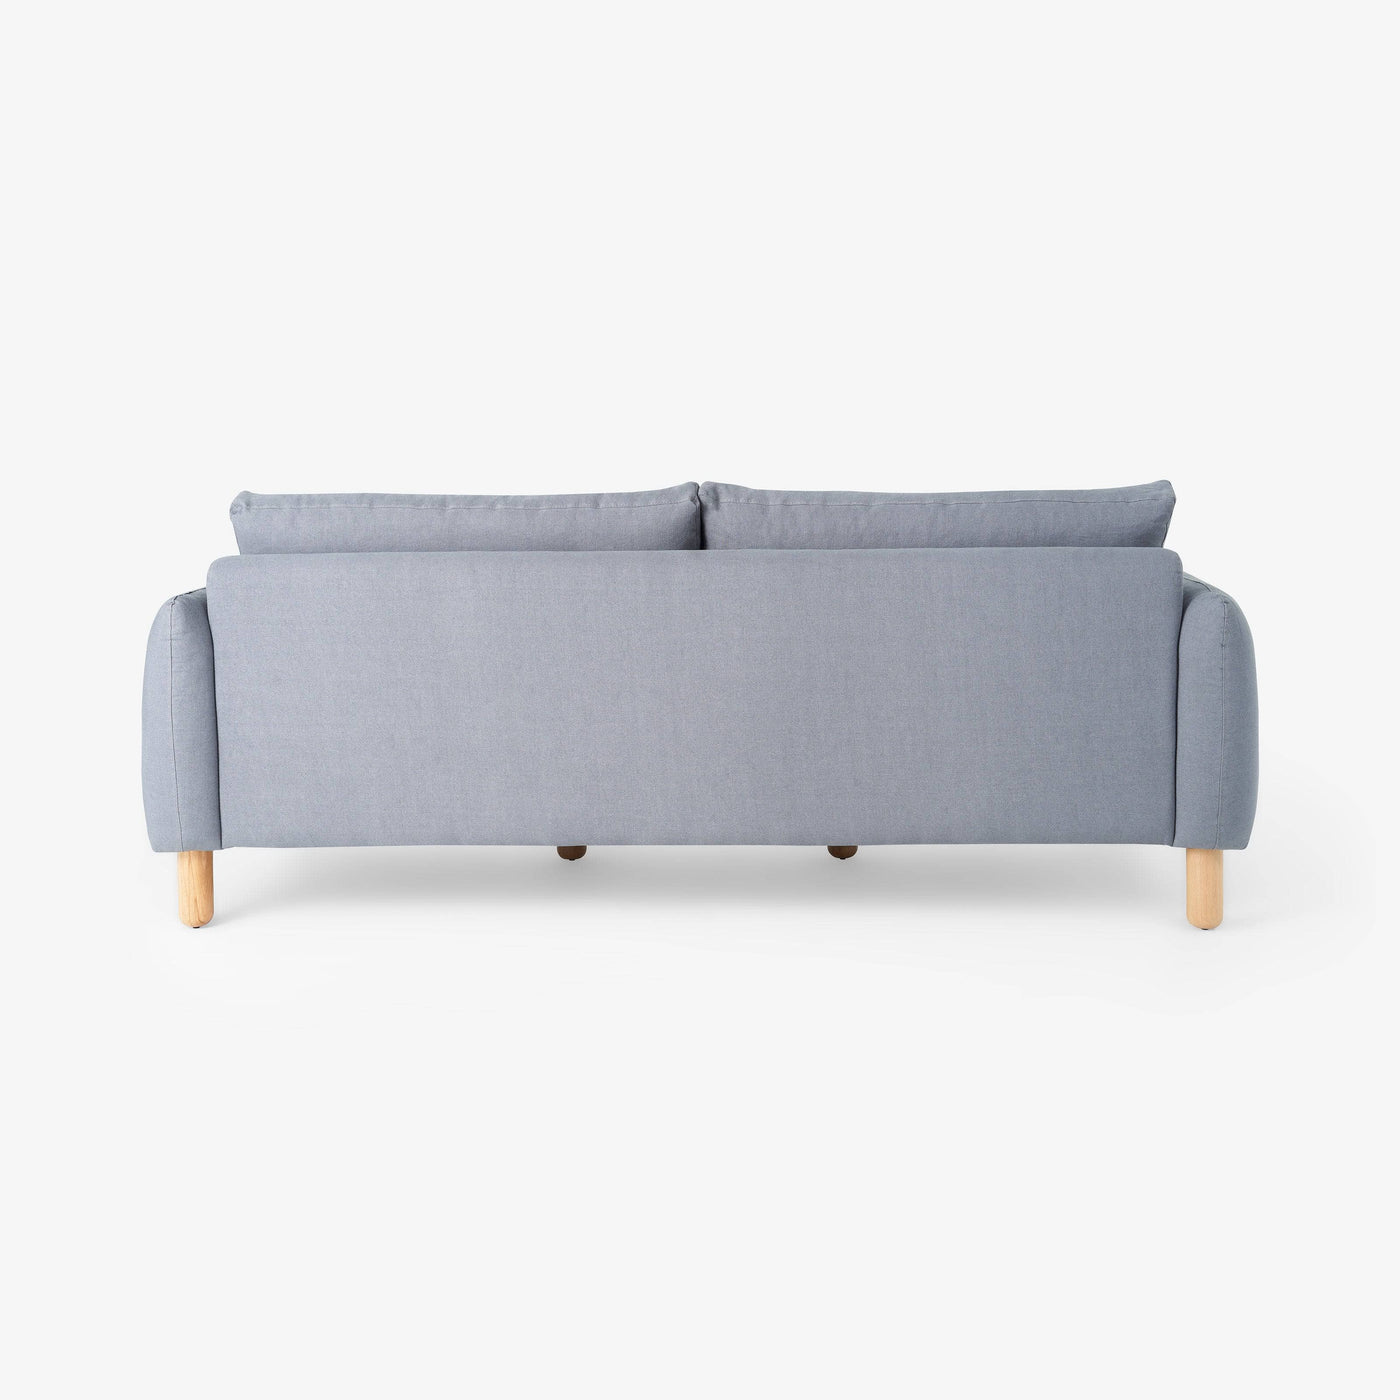 Sunso 3 Seater Linen Sofa, Grey 3 Seater Sofas sazy.com